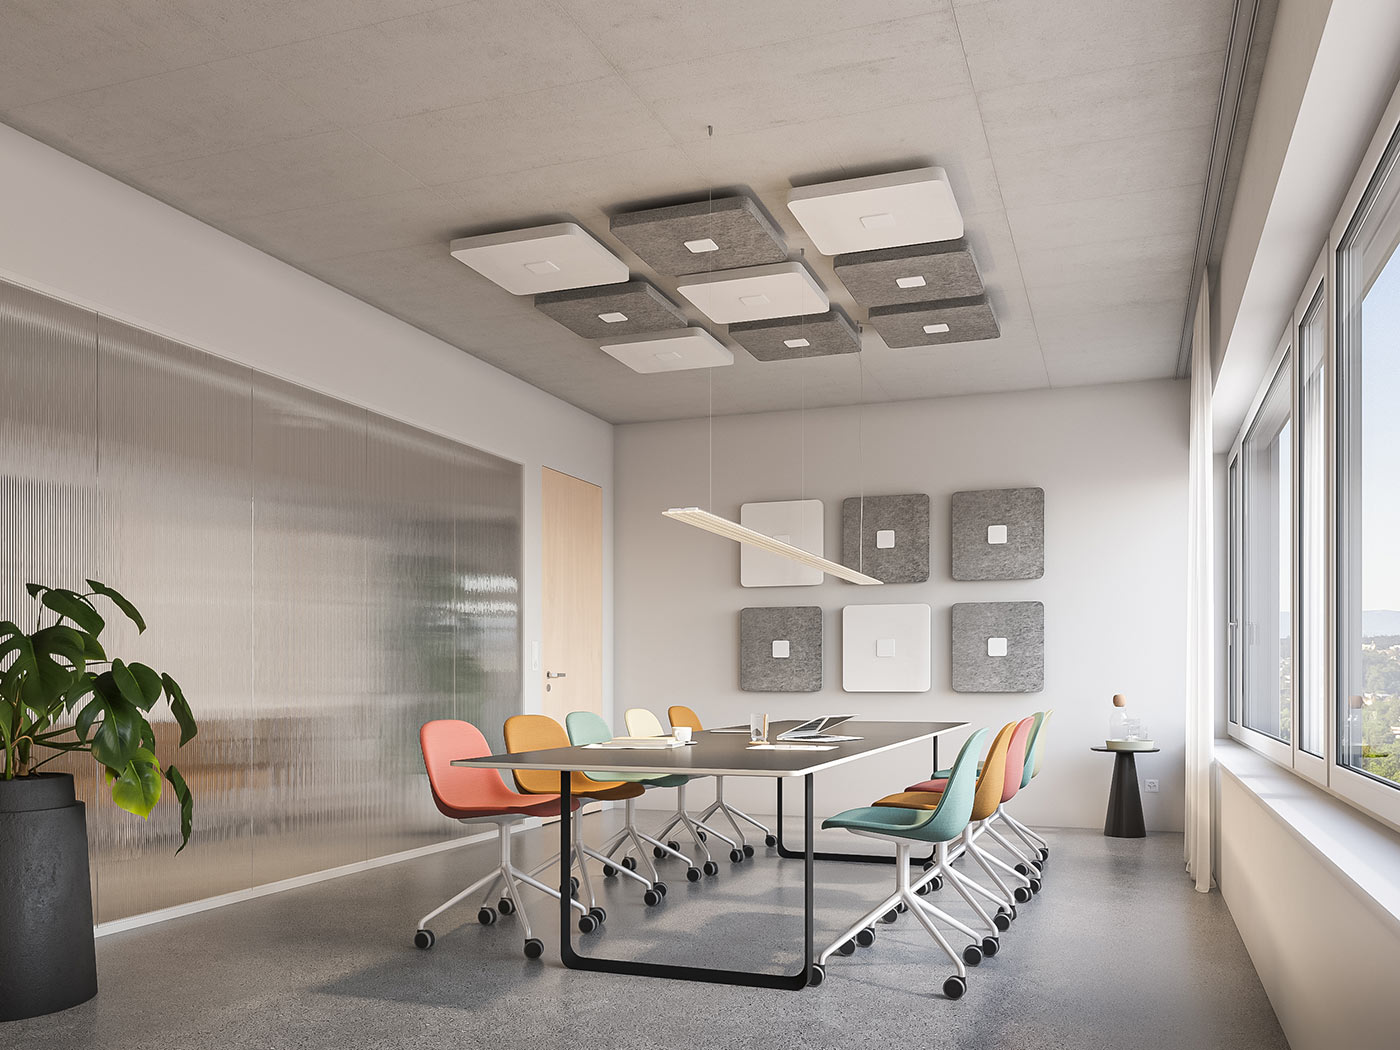 Disc'n Dots est un système acoustique modulaire abordable, efficace (classe A) et design, parfait pour des univers sonores agréables dans les bureaux, salles de réunion, réceptions et espaces de restauration.